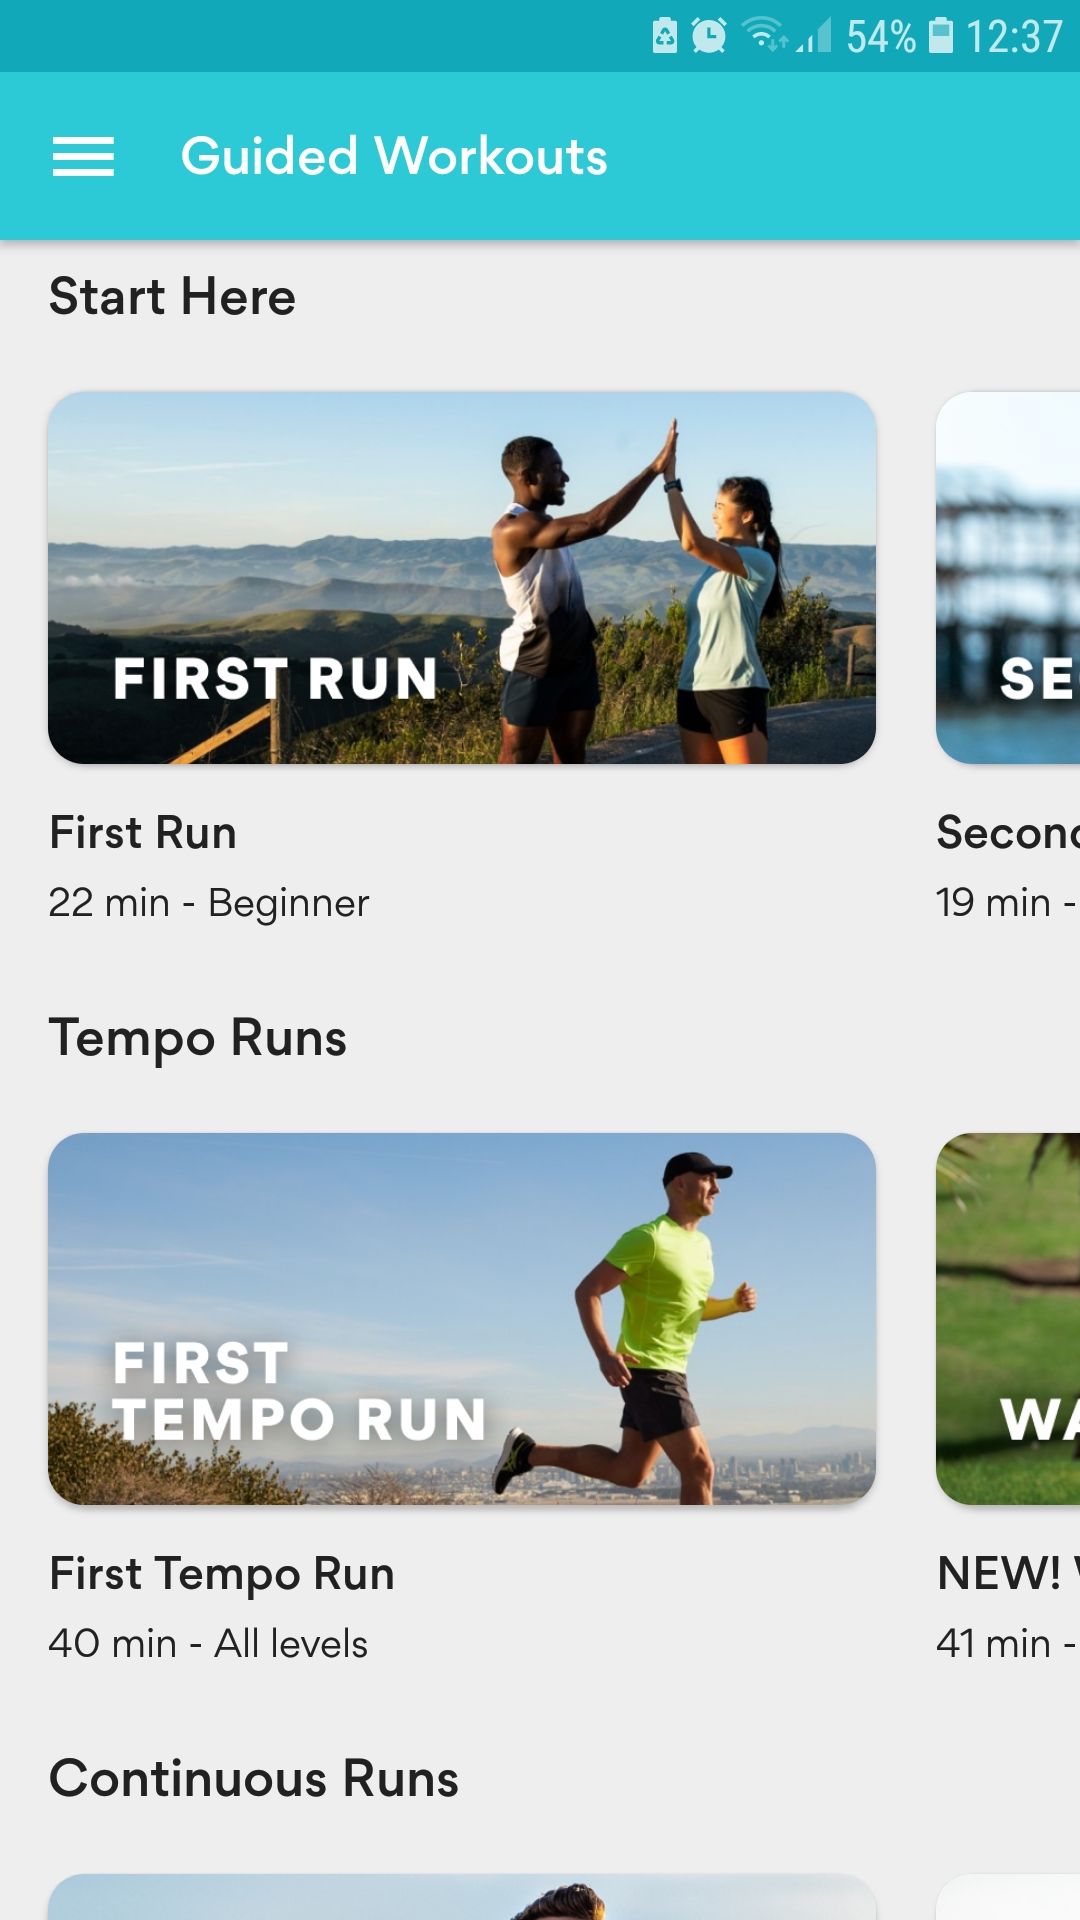 ASICS Runkeeper running tracker mobile app guided